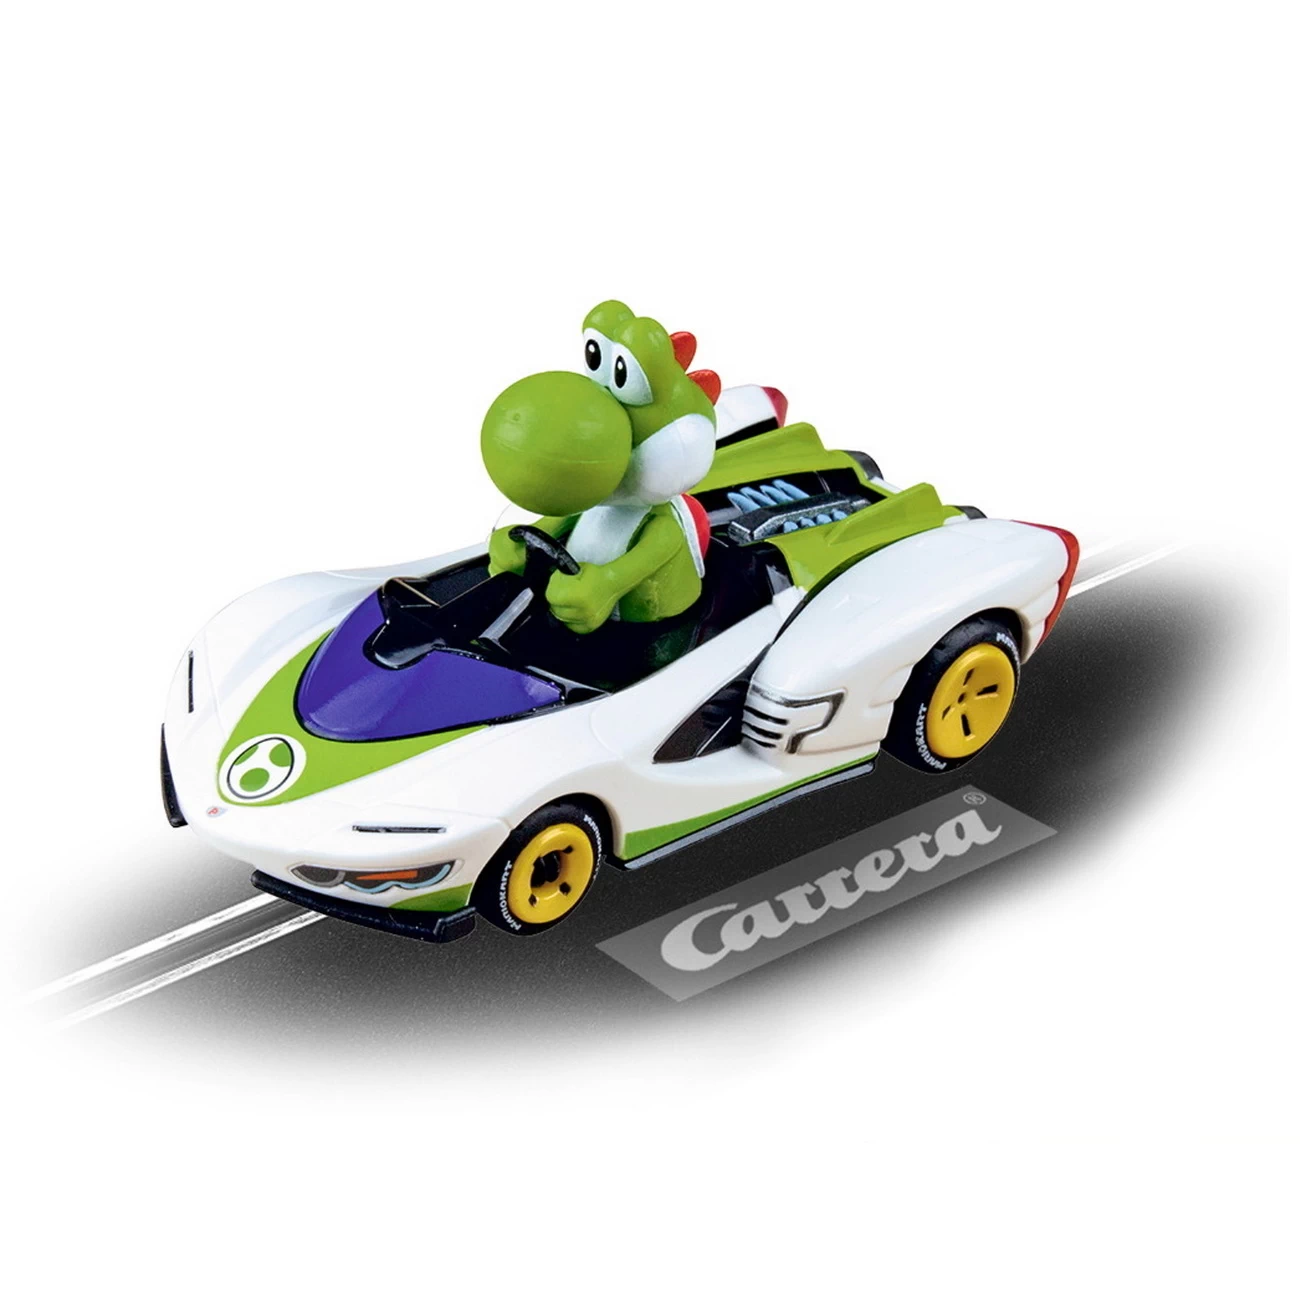 Yoshi - Mario Kart - P-Wing (64183)